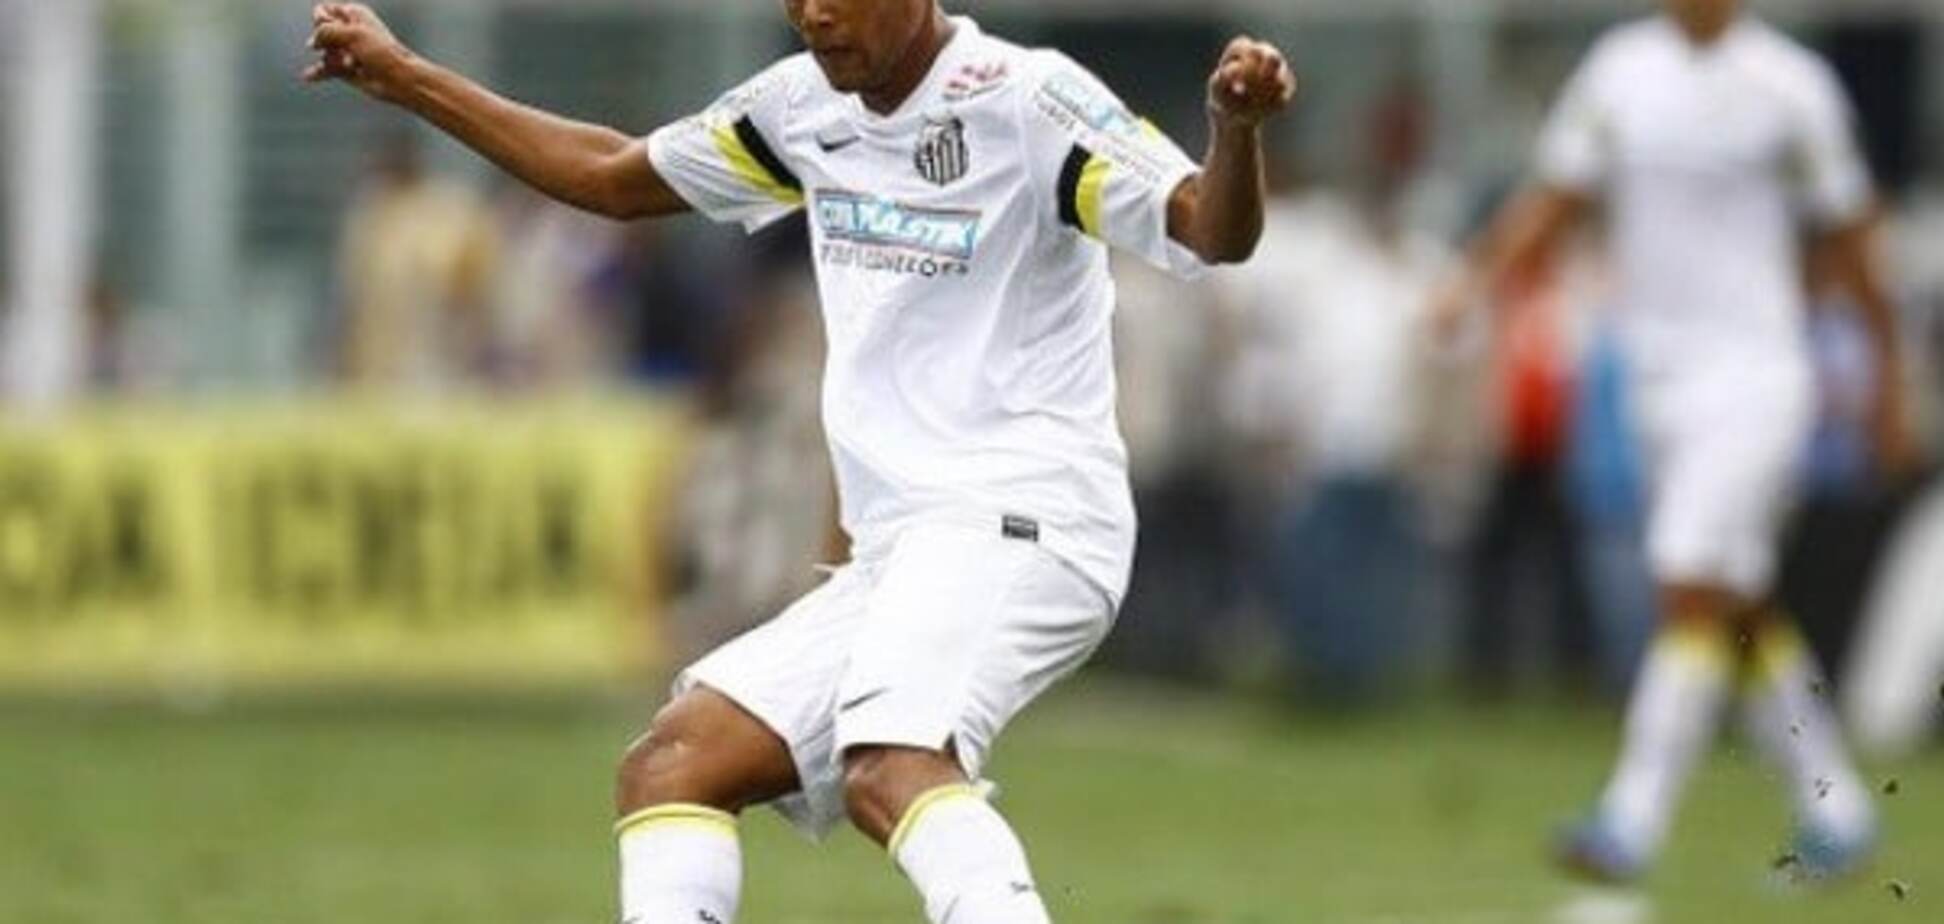 Гол года: бразильский футболист забил потрясающий мяч 'радугой': яркое видео